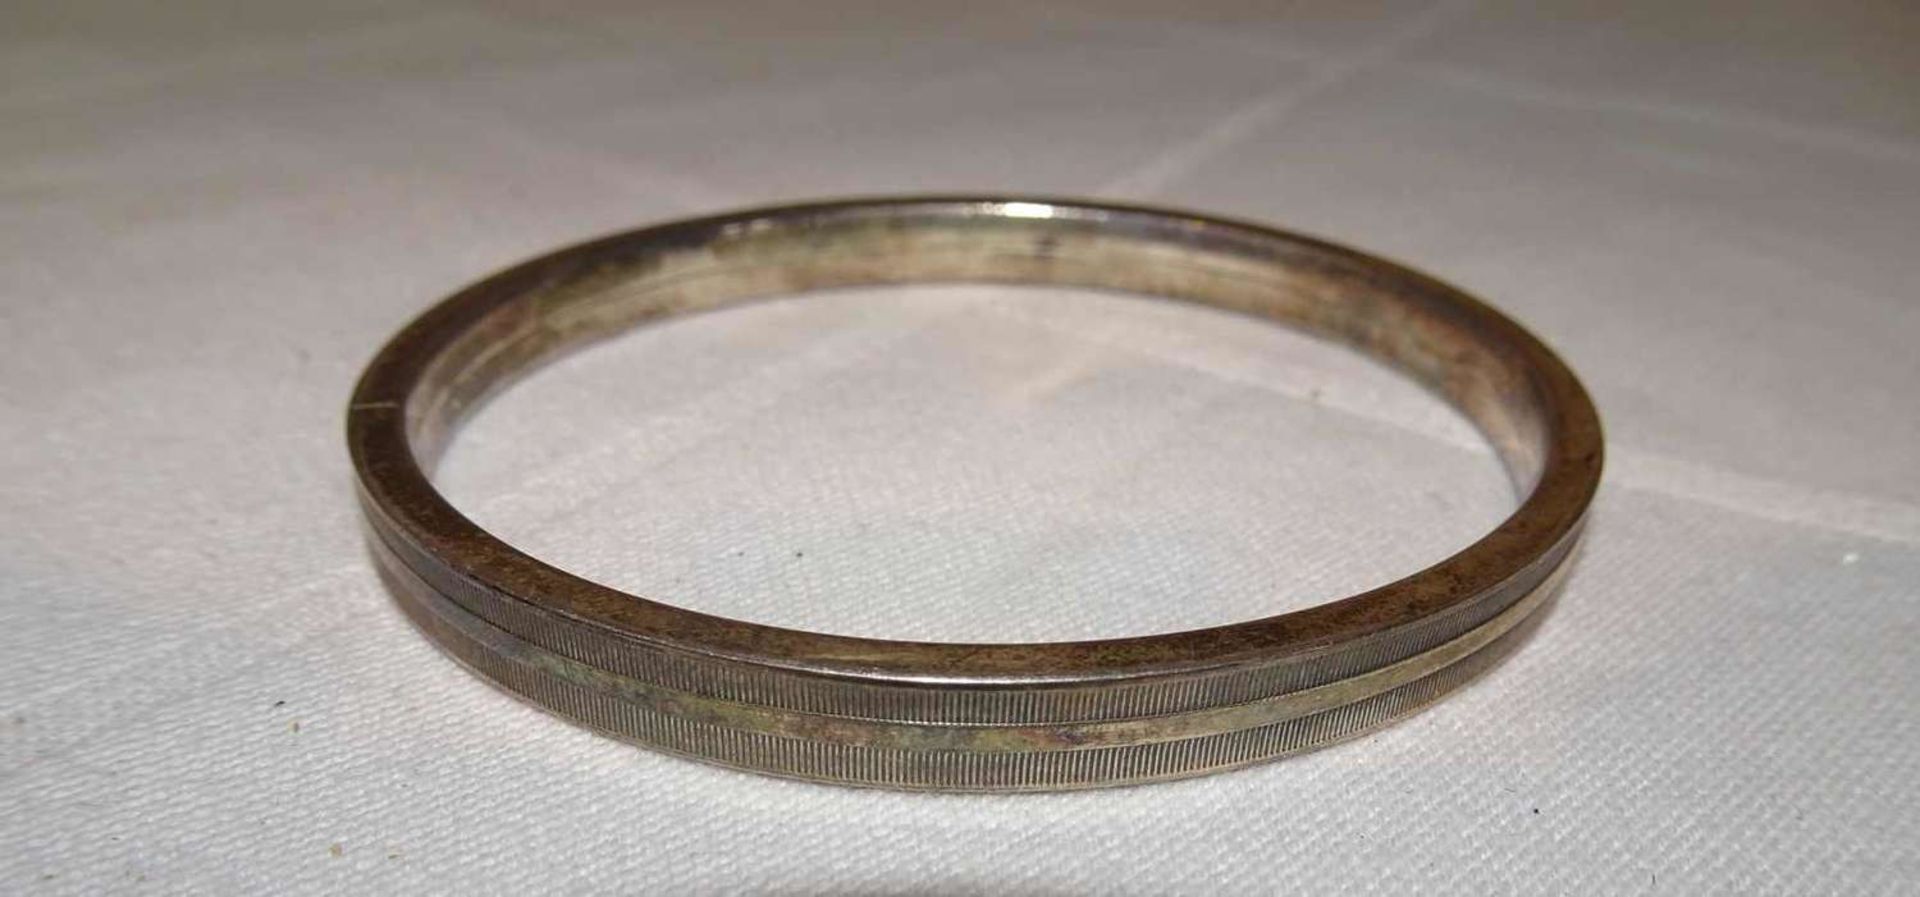 Armreif, 835er Silber, Durchmesser ca. 6,5 cm. Gewicht ca. 16,7 gr.Bangle, 835 silver, diameter app